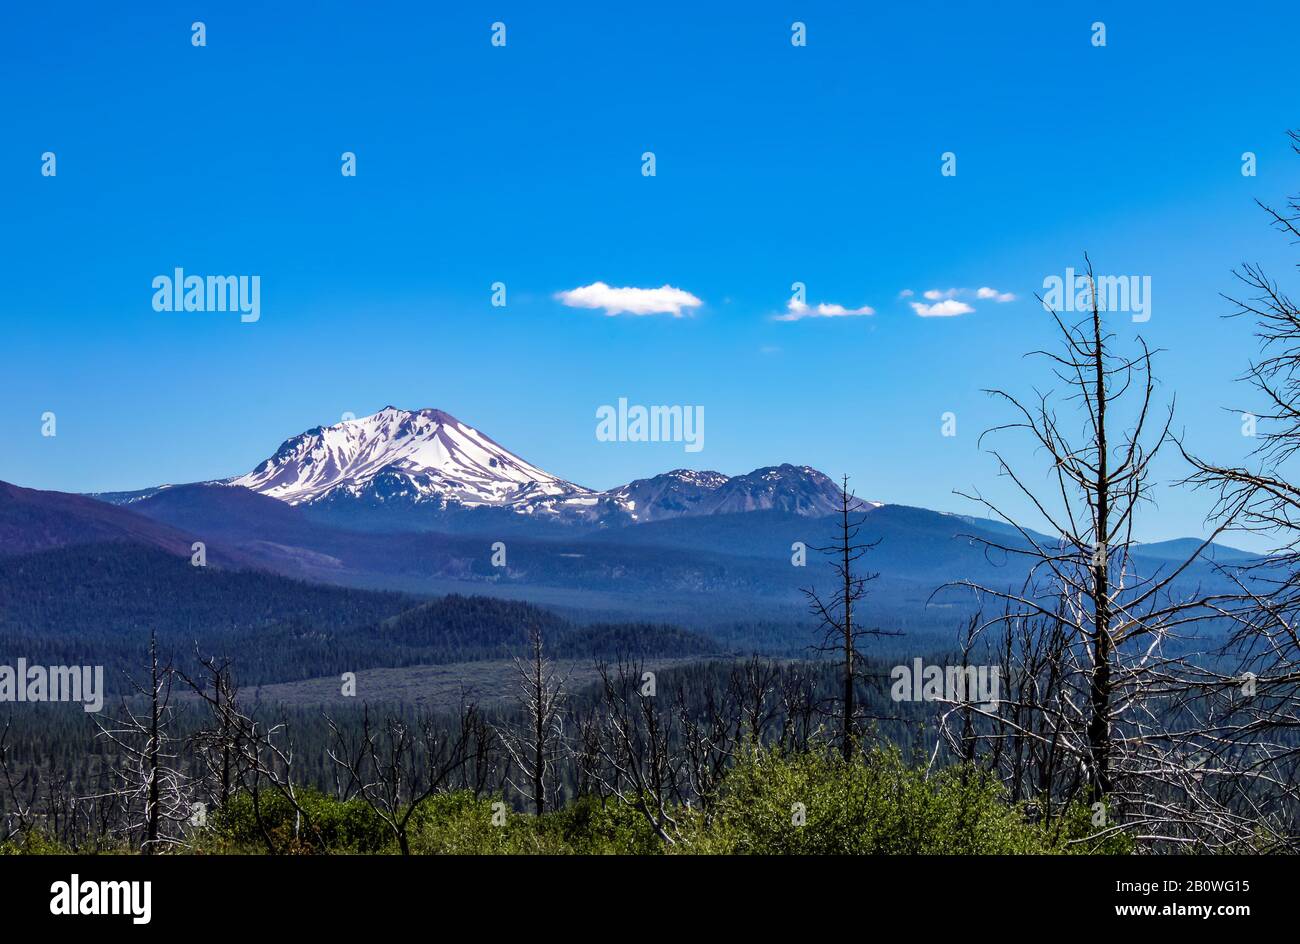 Sommet enneigé du magnifique Mont Shasta dans le nord-ouest des États-Unis avec des troncs d'arbres brûlés au premier plan Banque D'Images